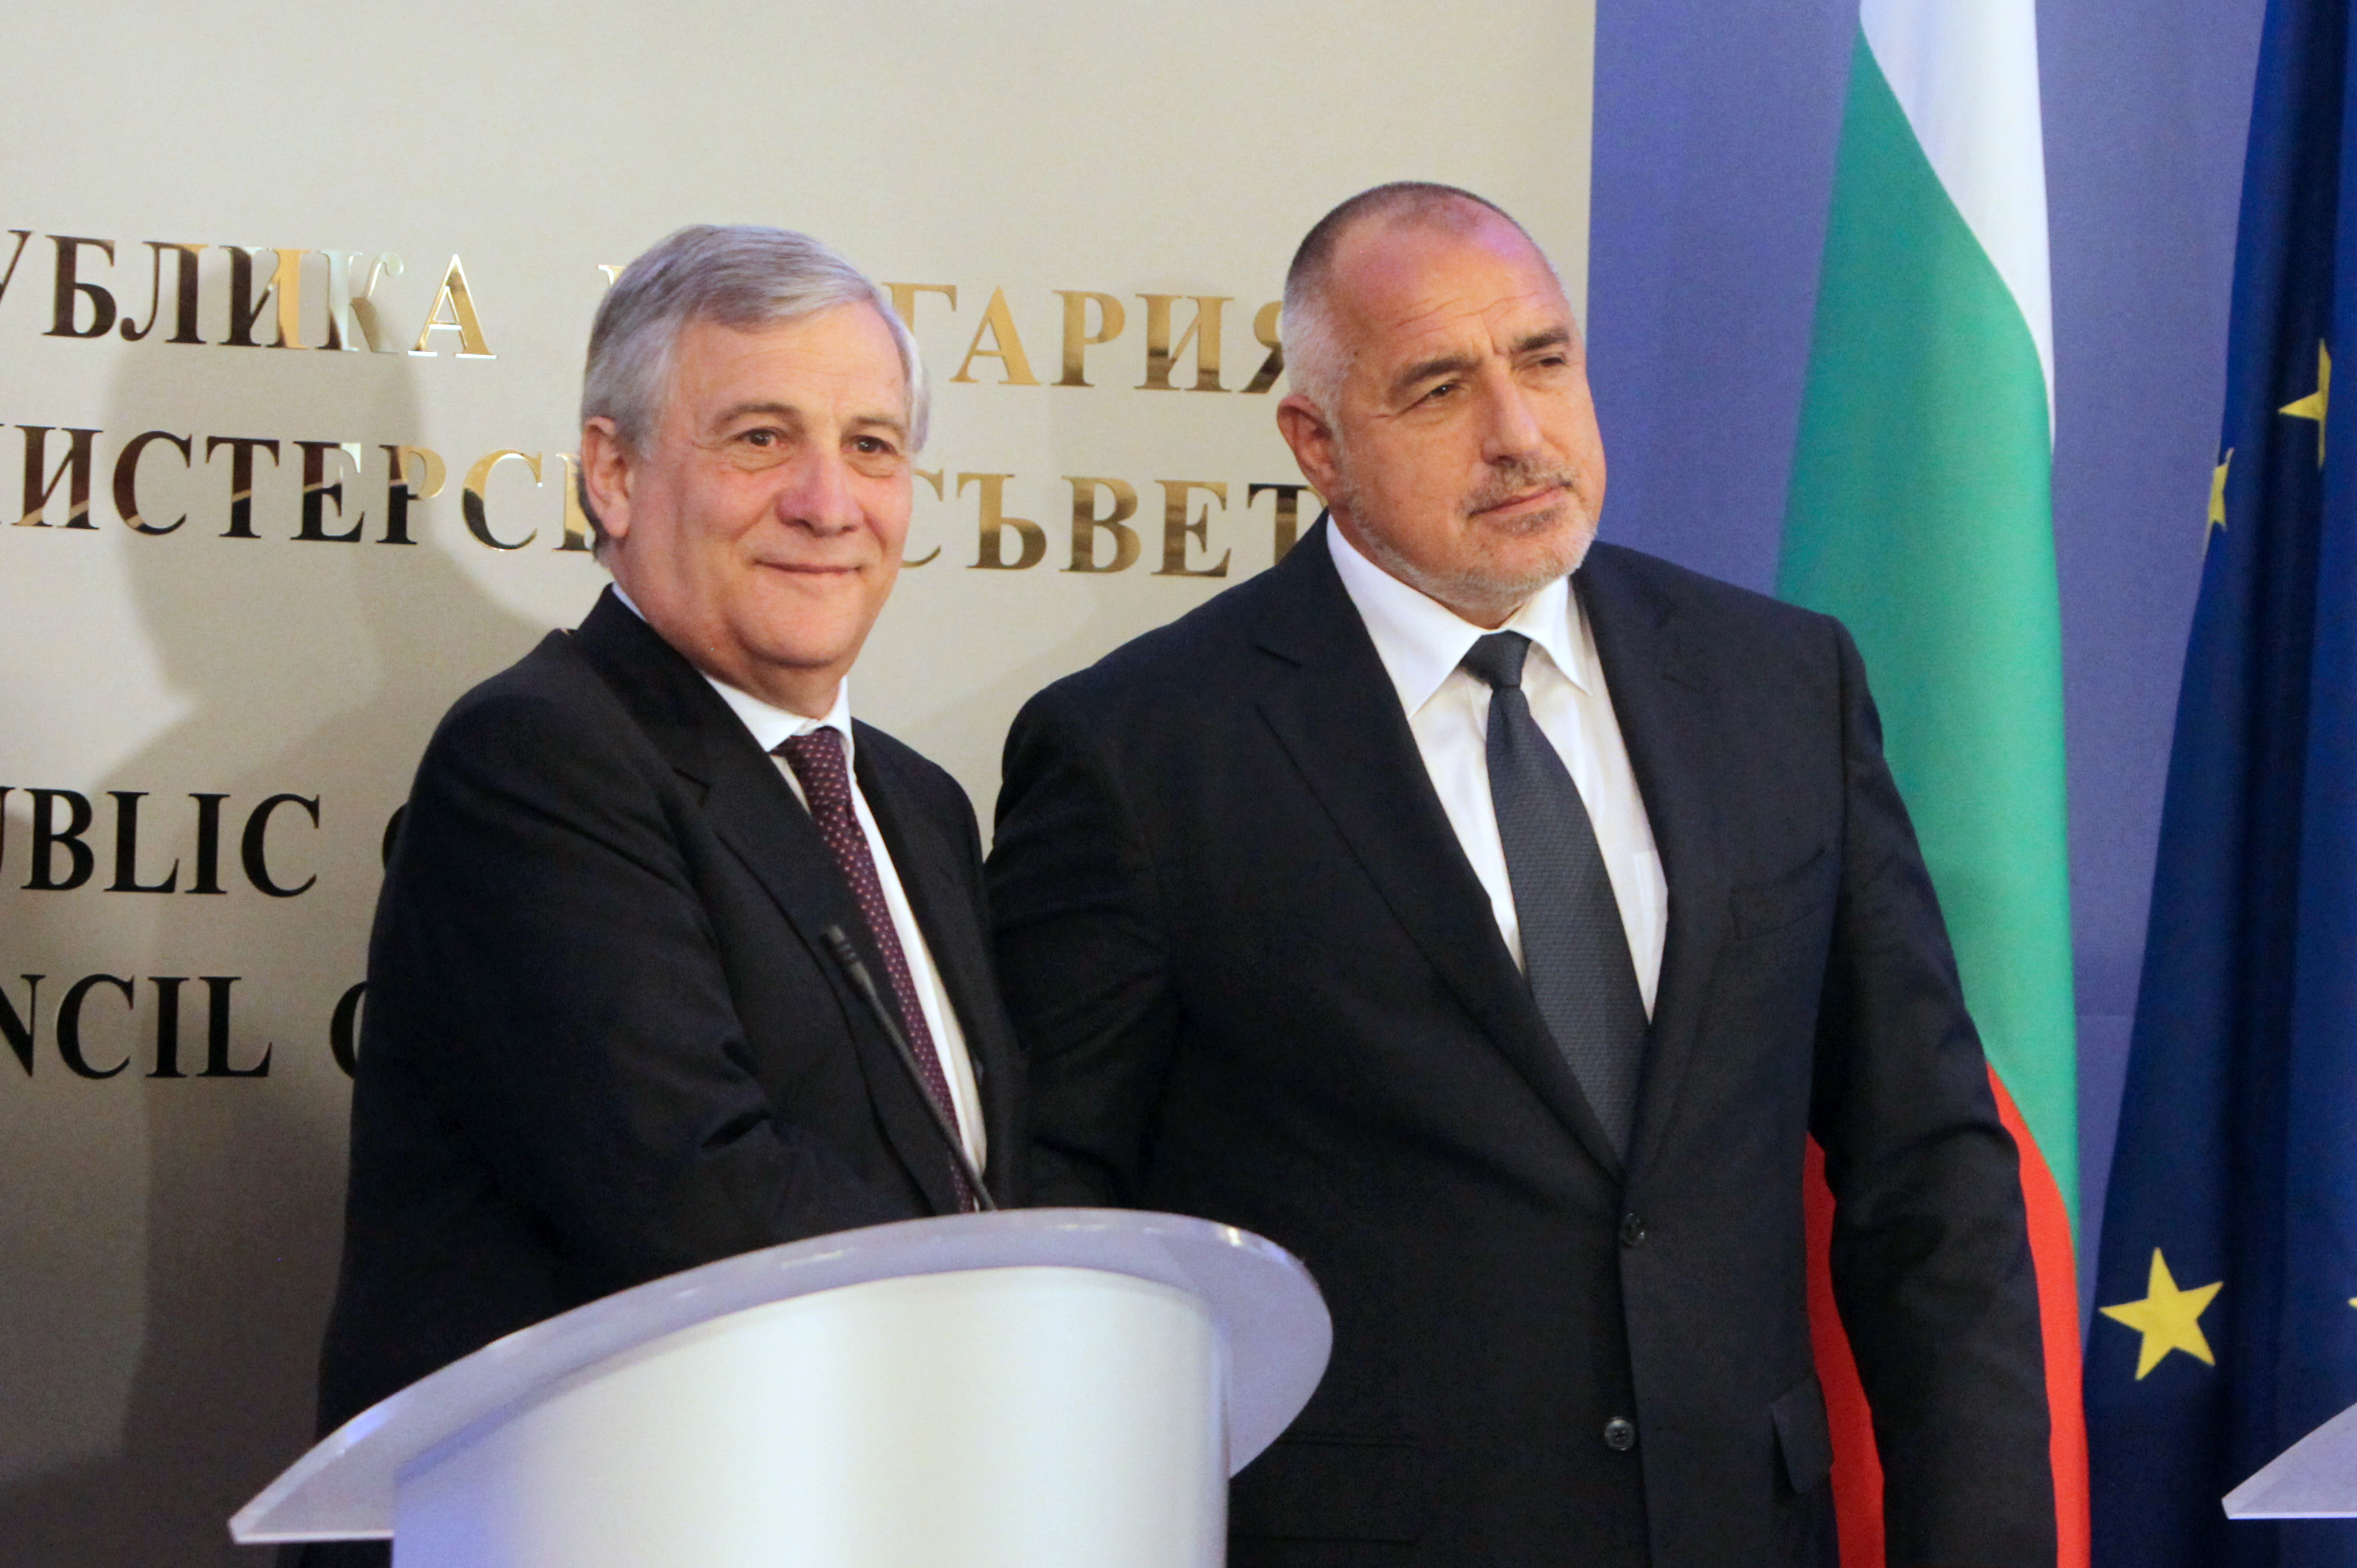 Бойко Борисов и Антонио Таяни се съгласиха, че Европа трябва да играе по-голяма роля в решаване на световните проблеми